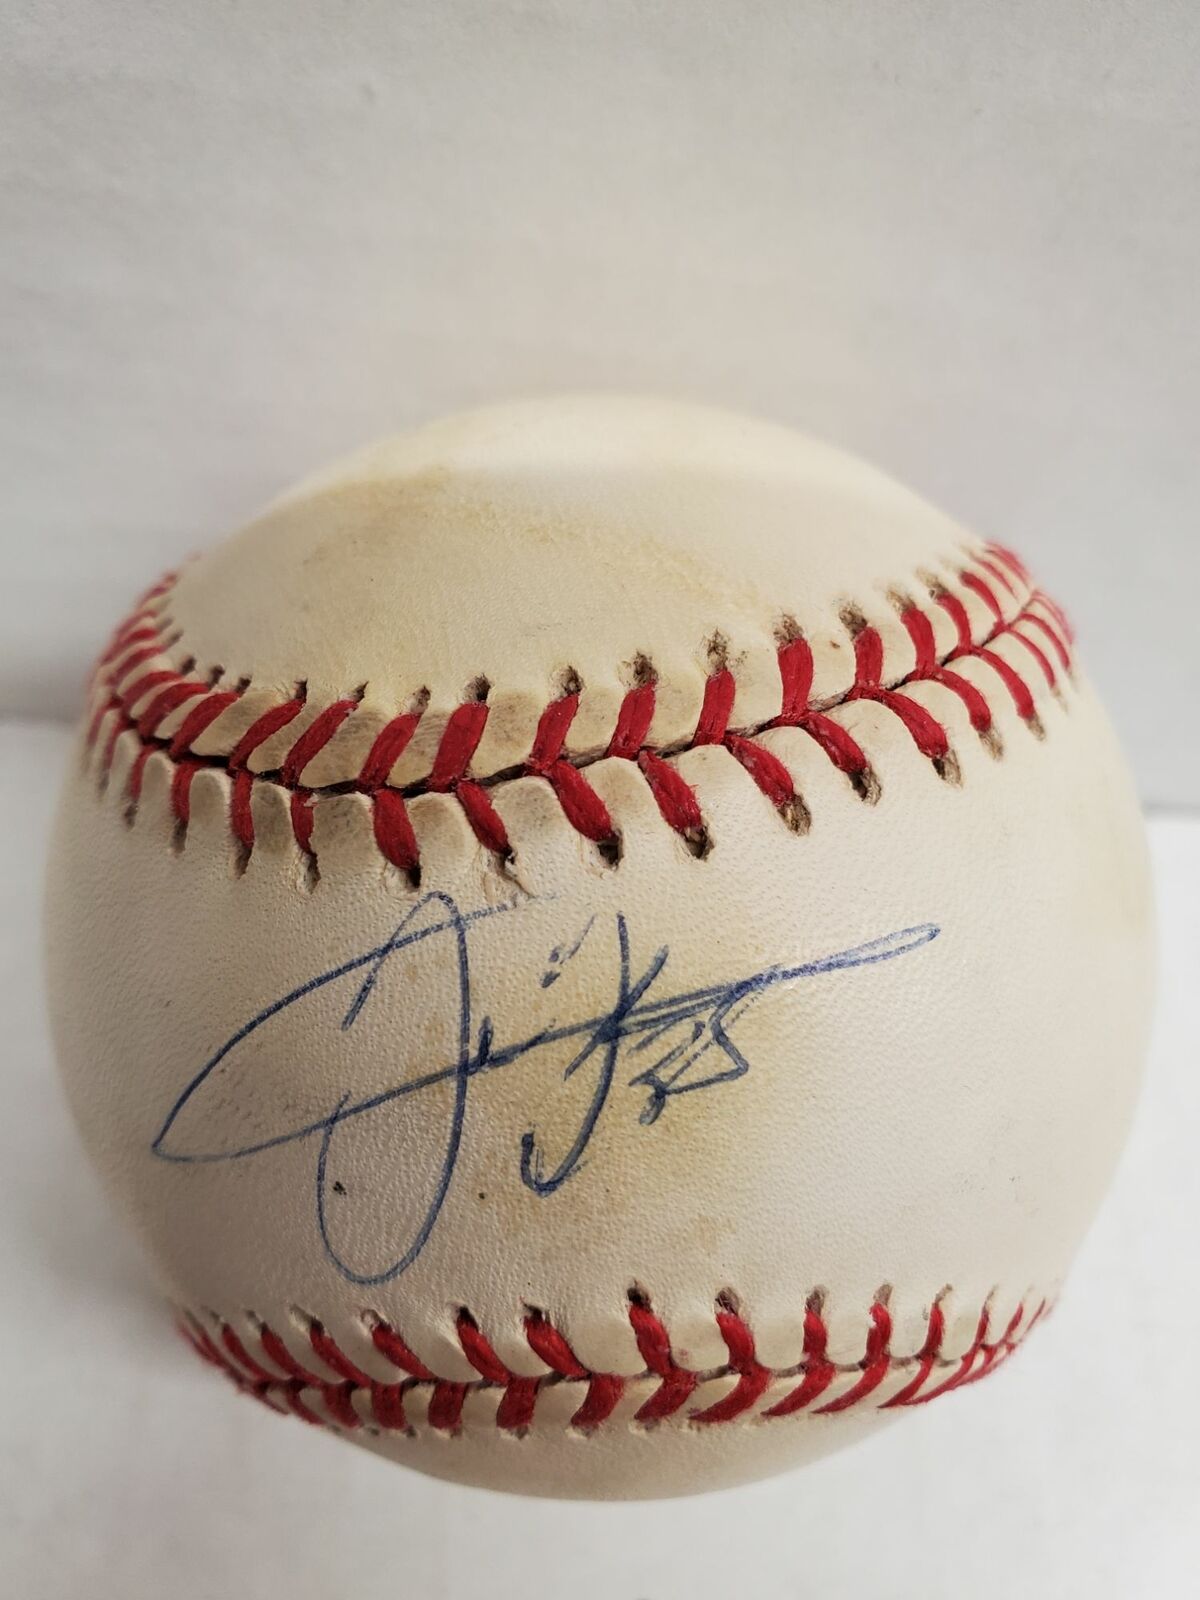 Frank Thomas signed American League Ball - White Sox - HOF